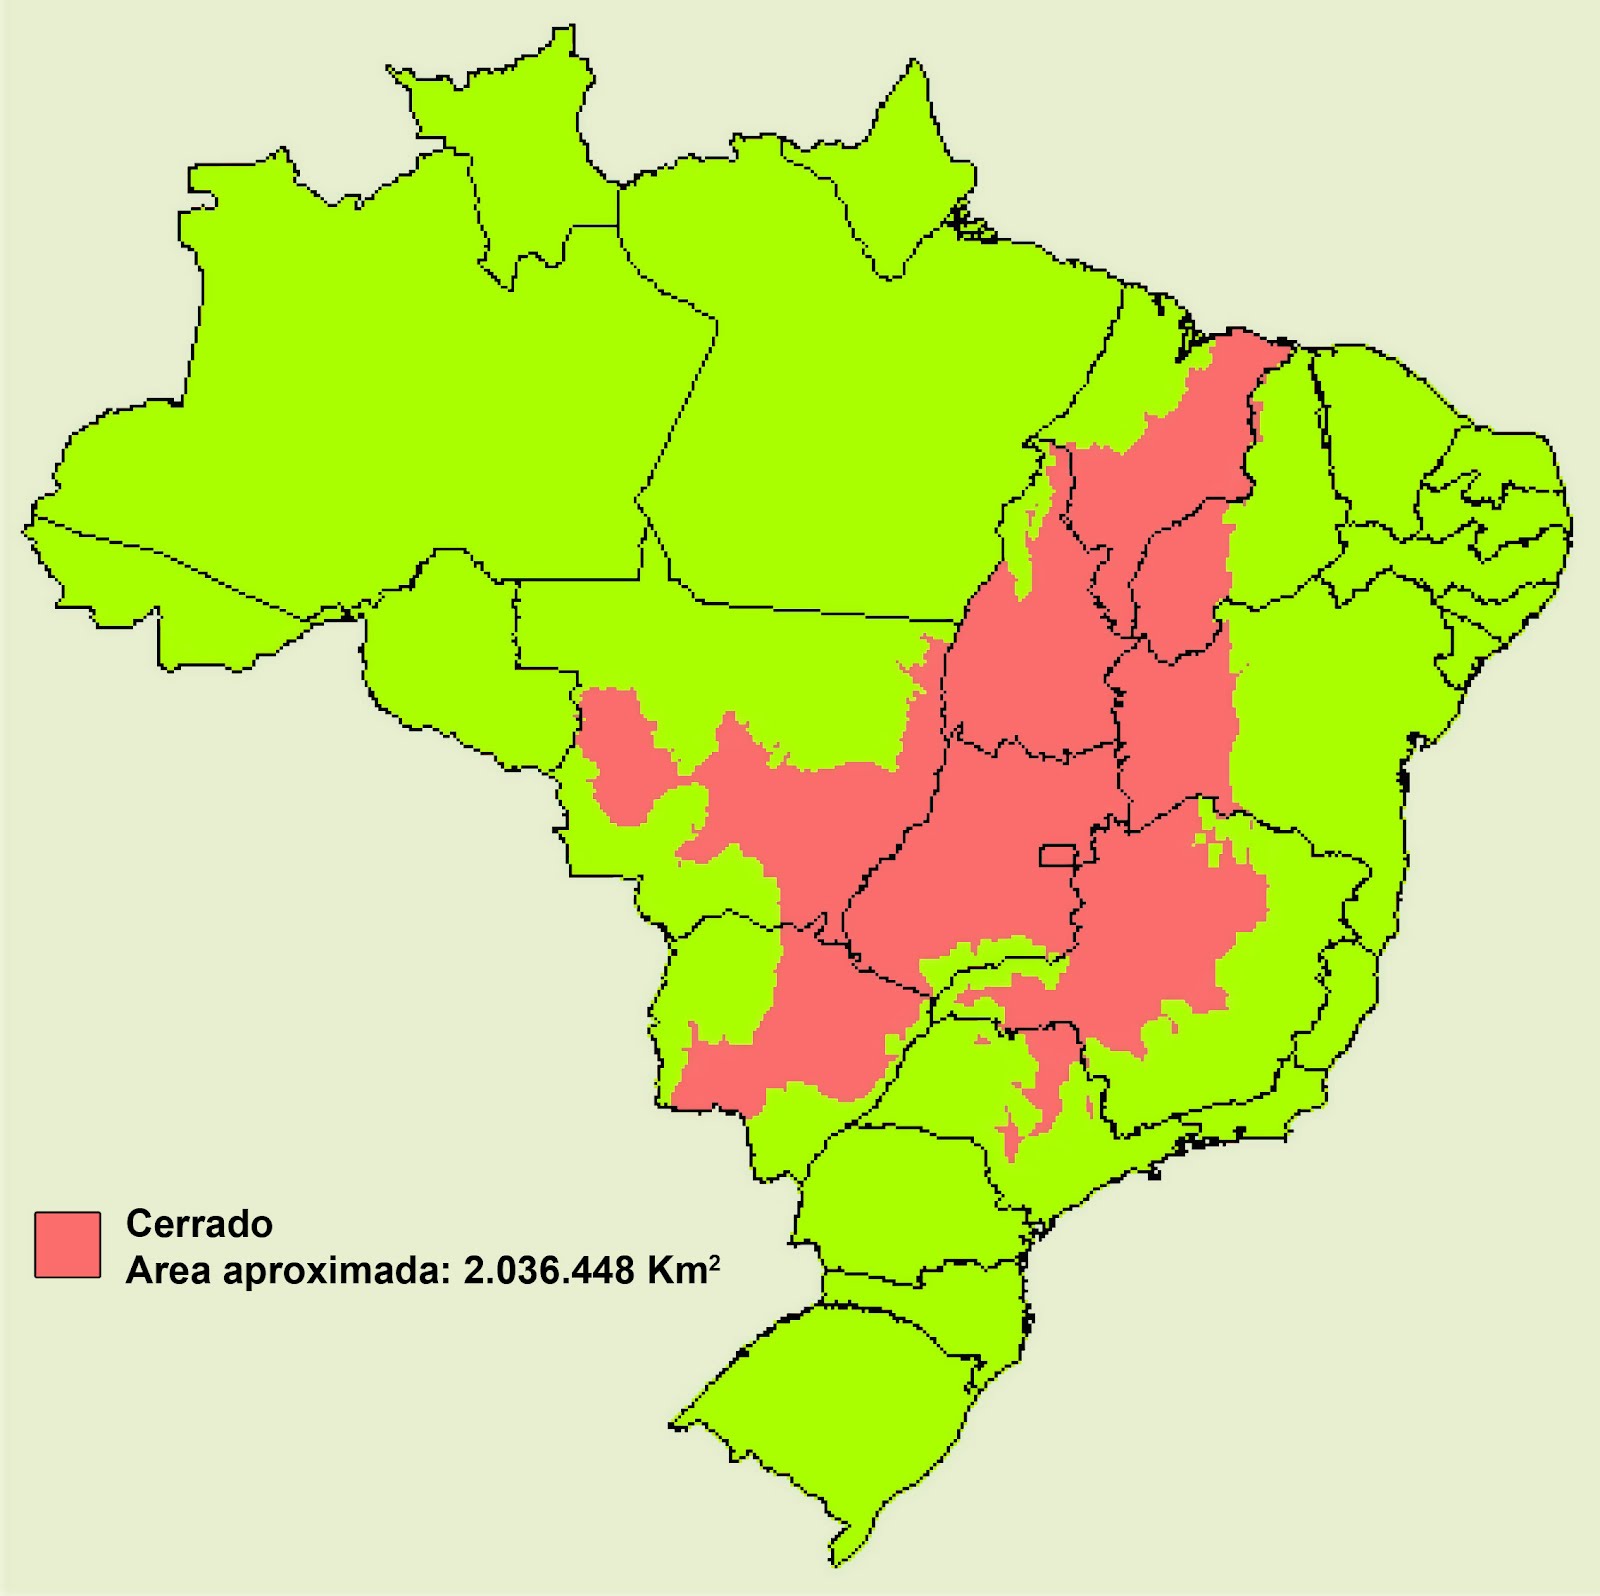 Cerrado areras in Brazil. (Photo internet reproduction)